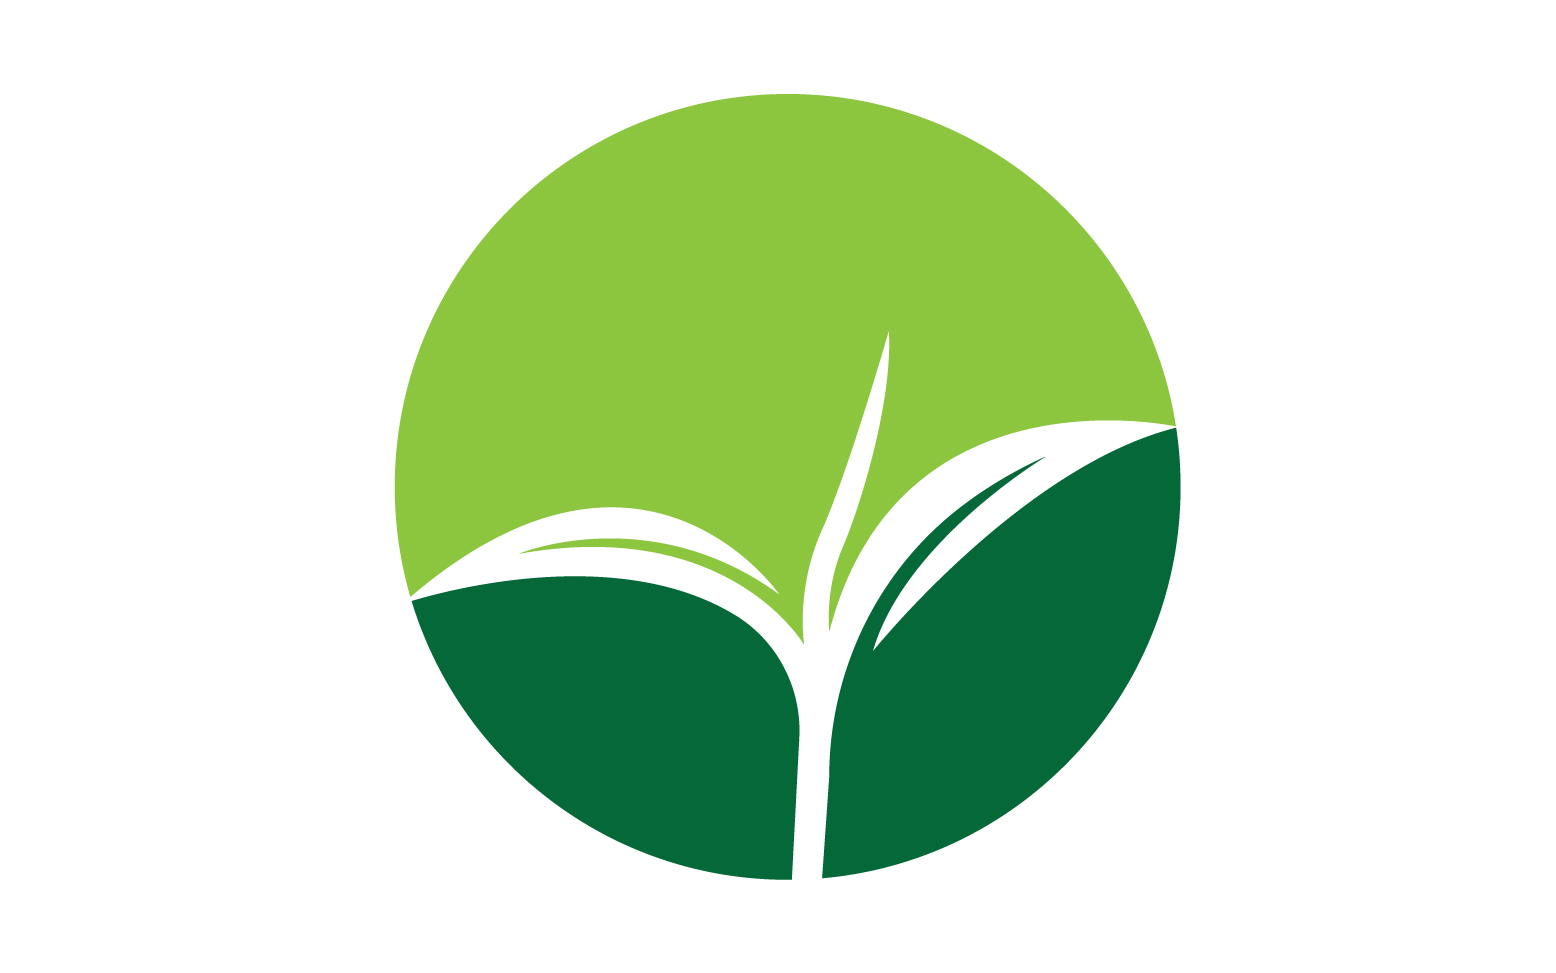 Natural leaf mint green logo illustration design vector v36